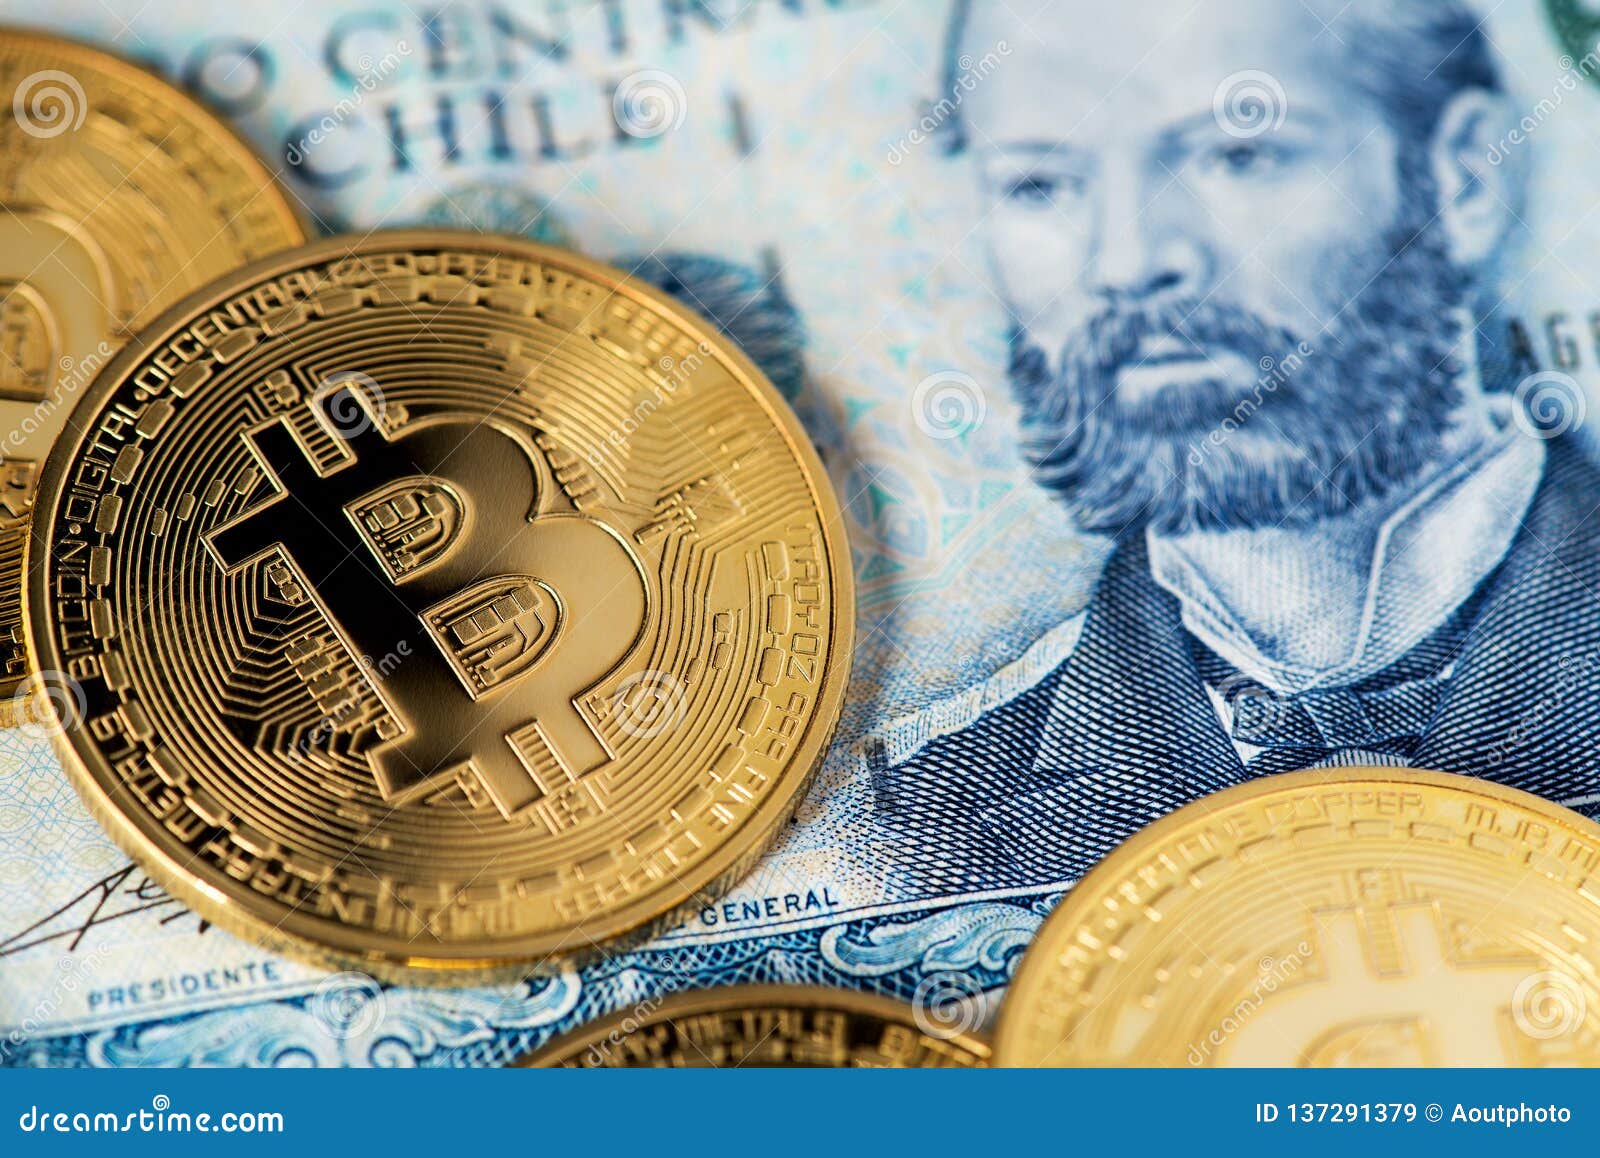 bitcoins en pesos